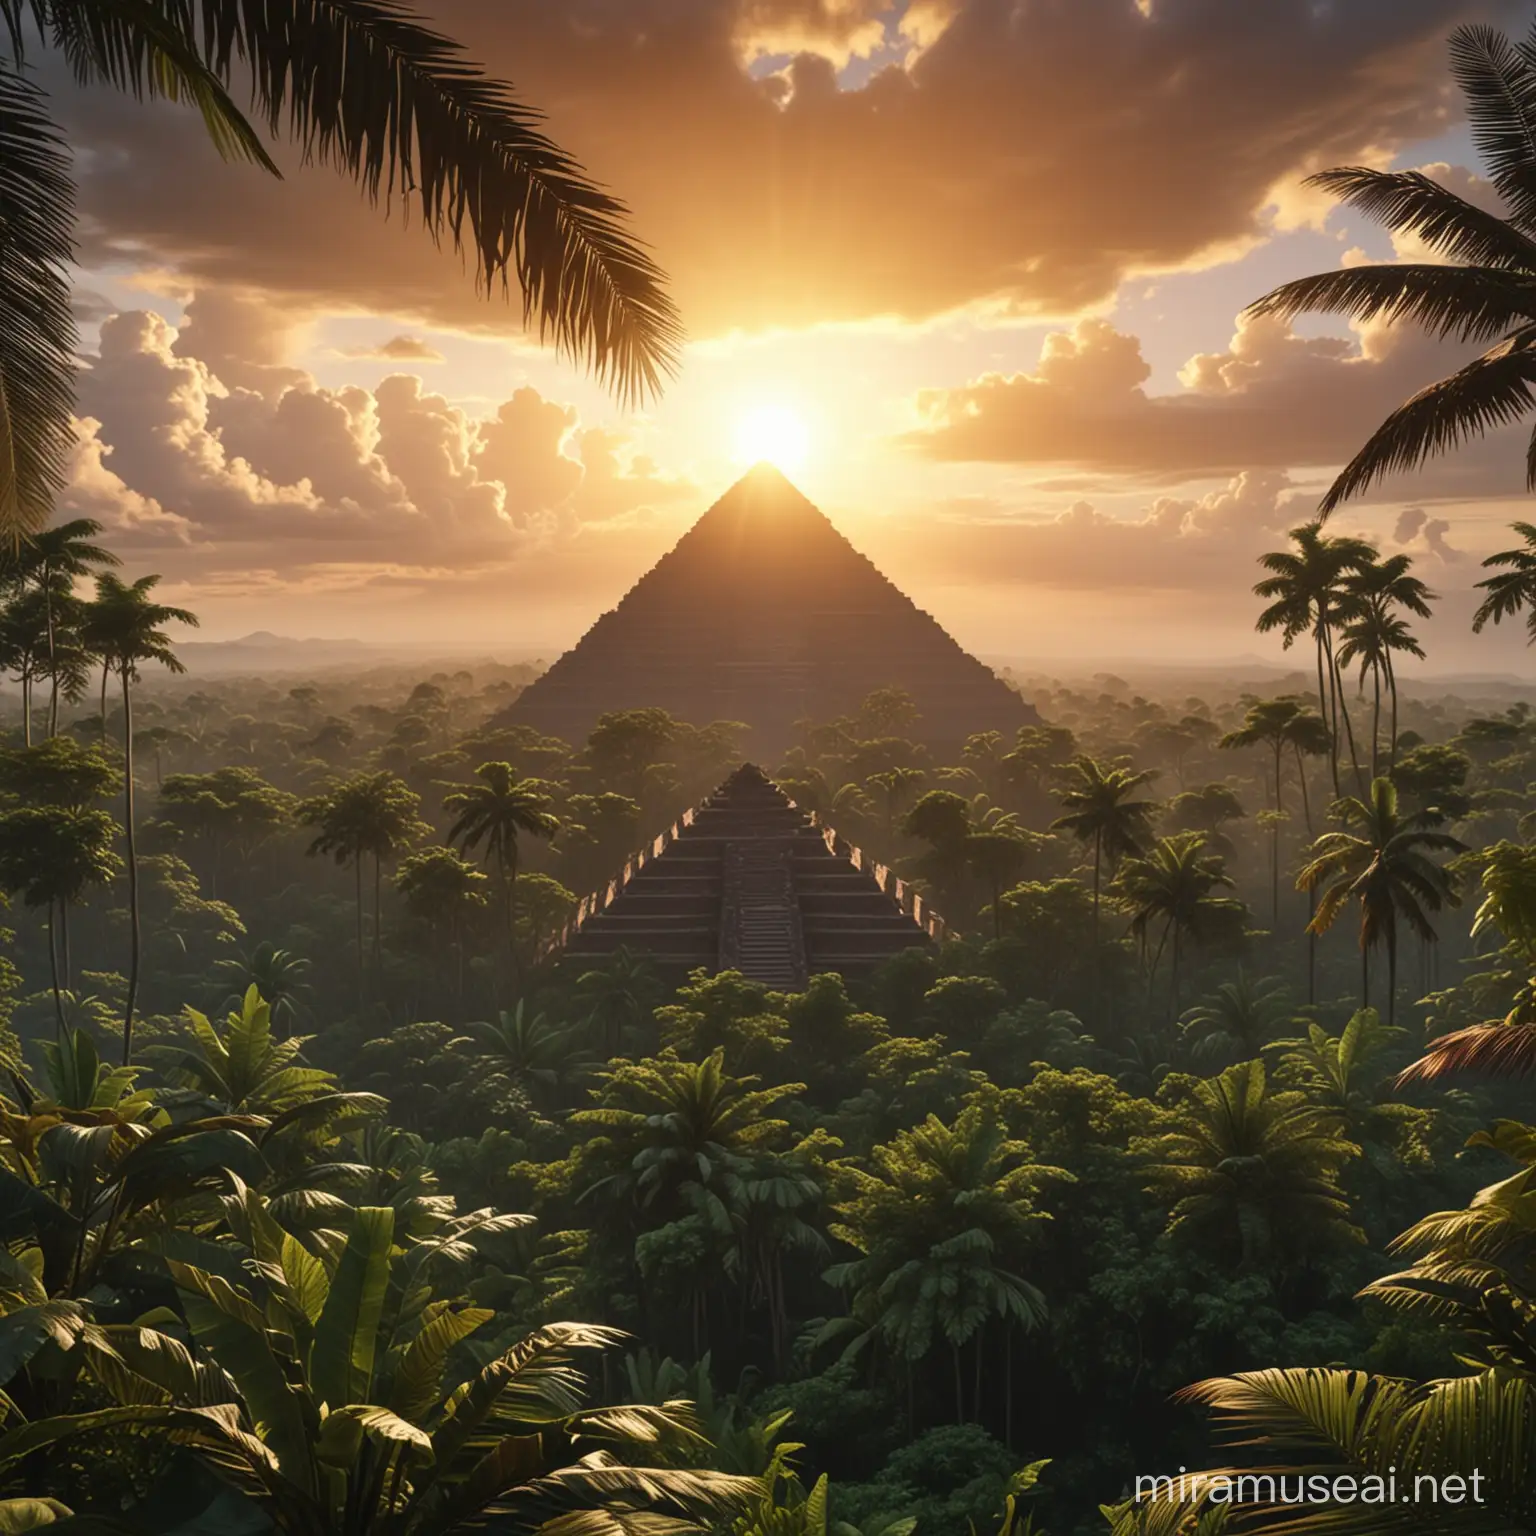 selva tropical hiper realistic 4k real 
con un amanecer en el horizonte una piramide mesoamericana al fondo entre el sol y las nubes 

